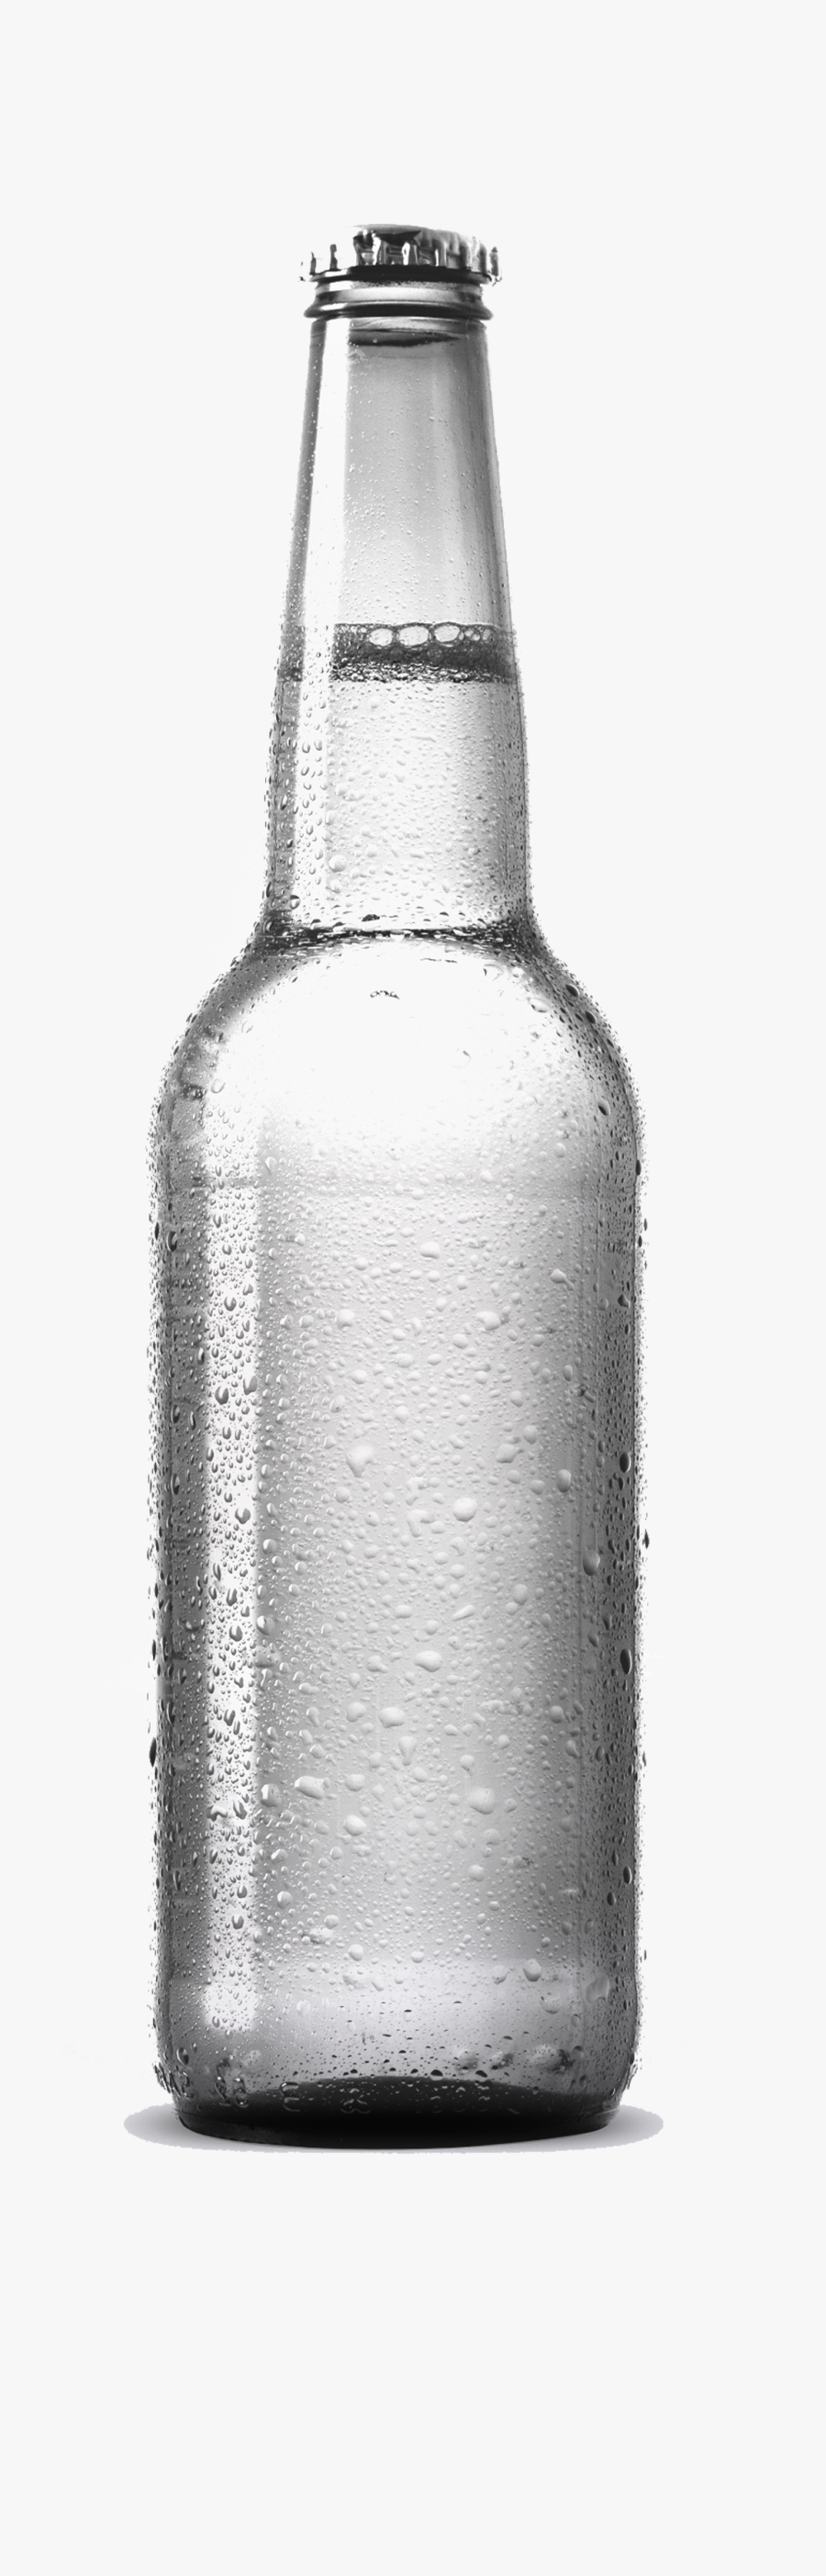 Clip Art Glass Mockup - Beer Bottle Mockup Png, Transparent Clipart